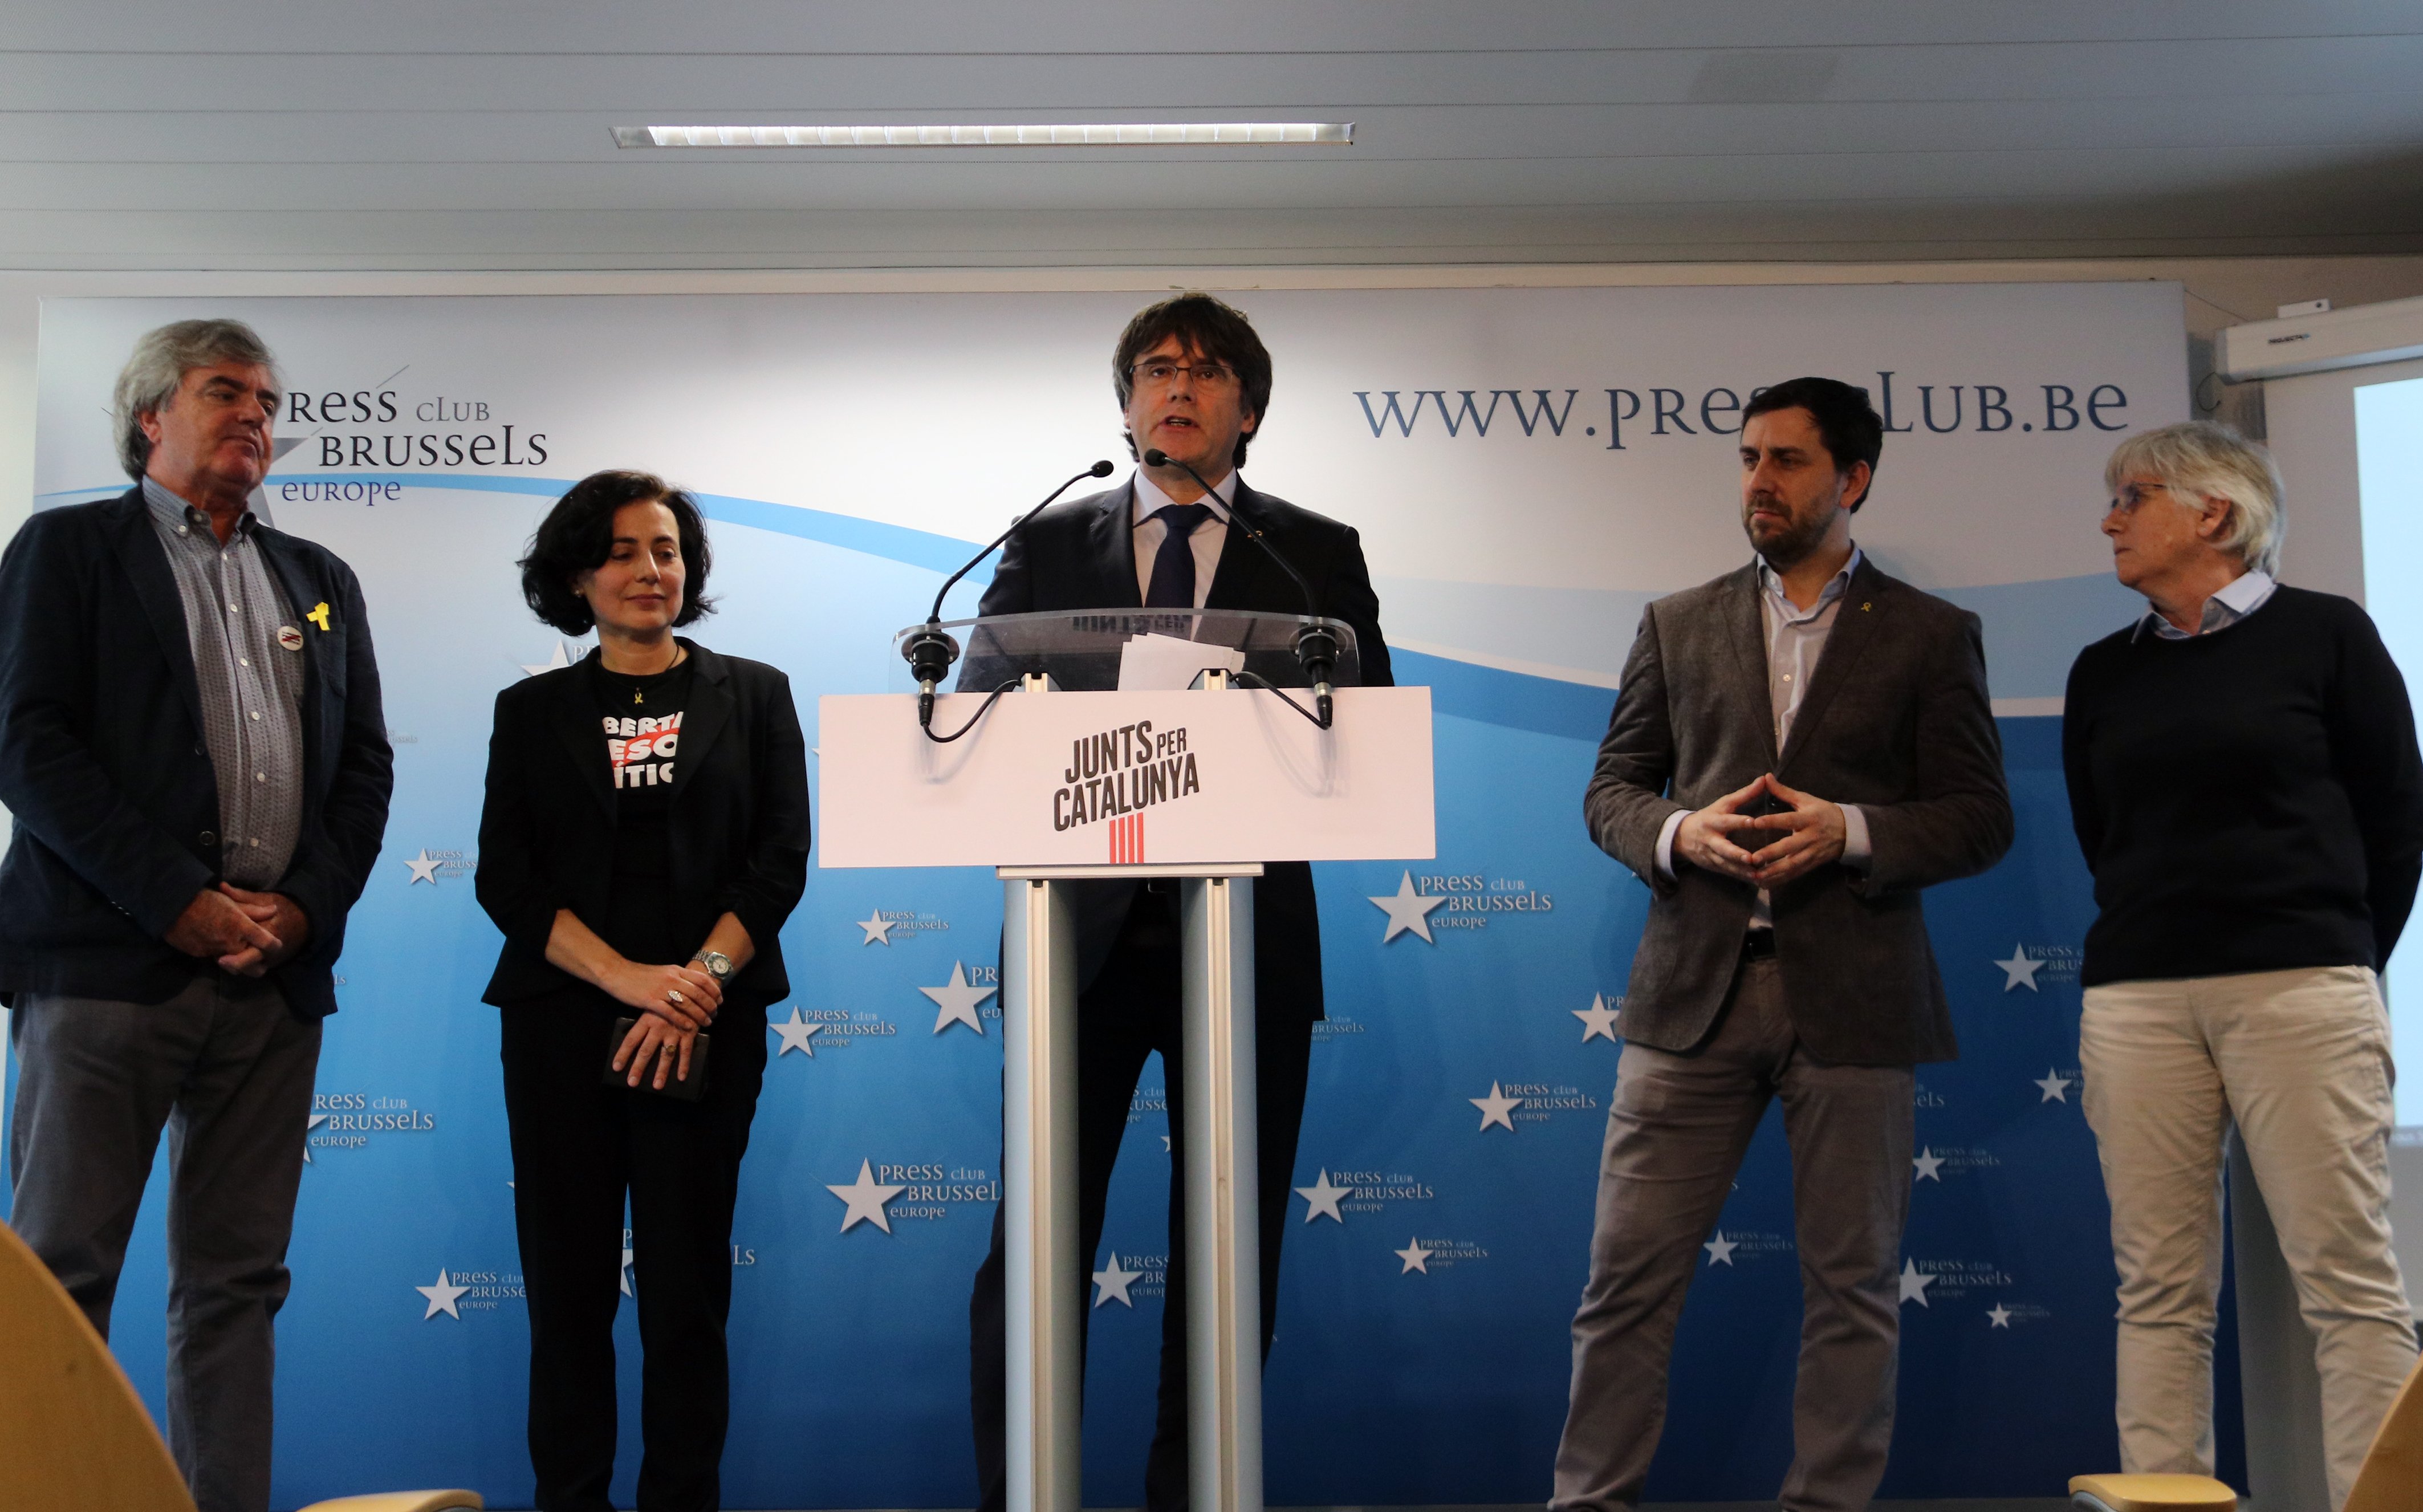 Primer mensaje de Puigdemont en las europeas: "Aquí ofrecemos unidad"